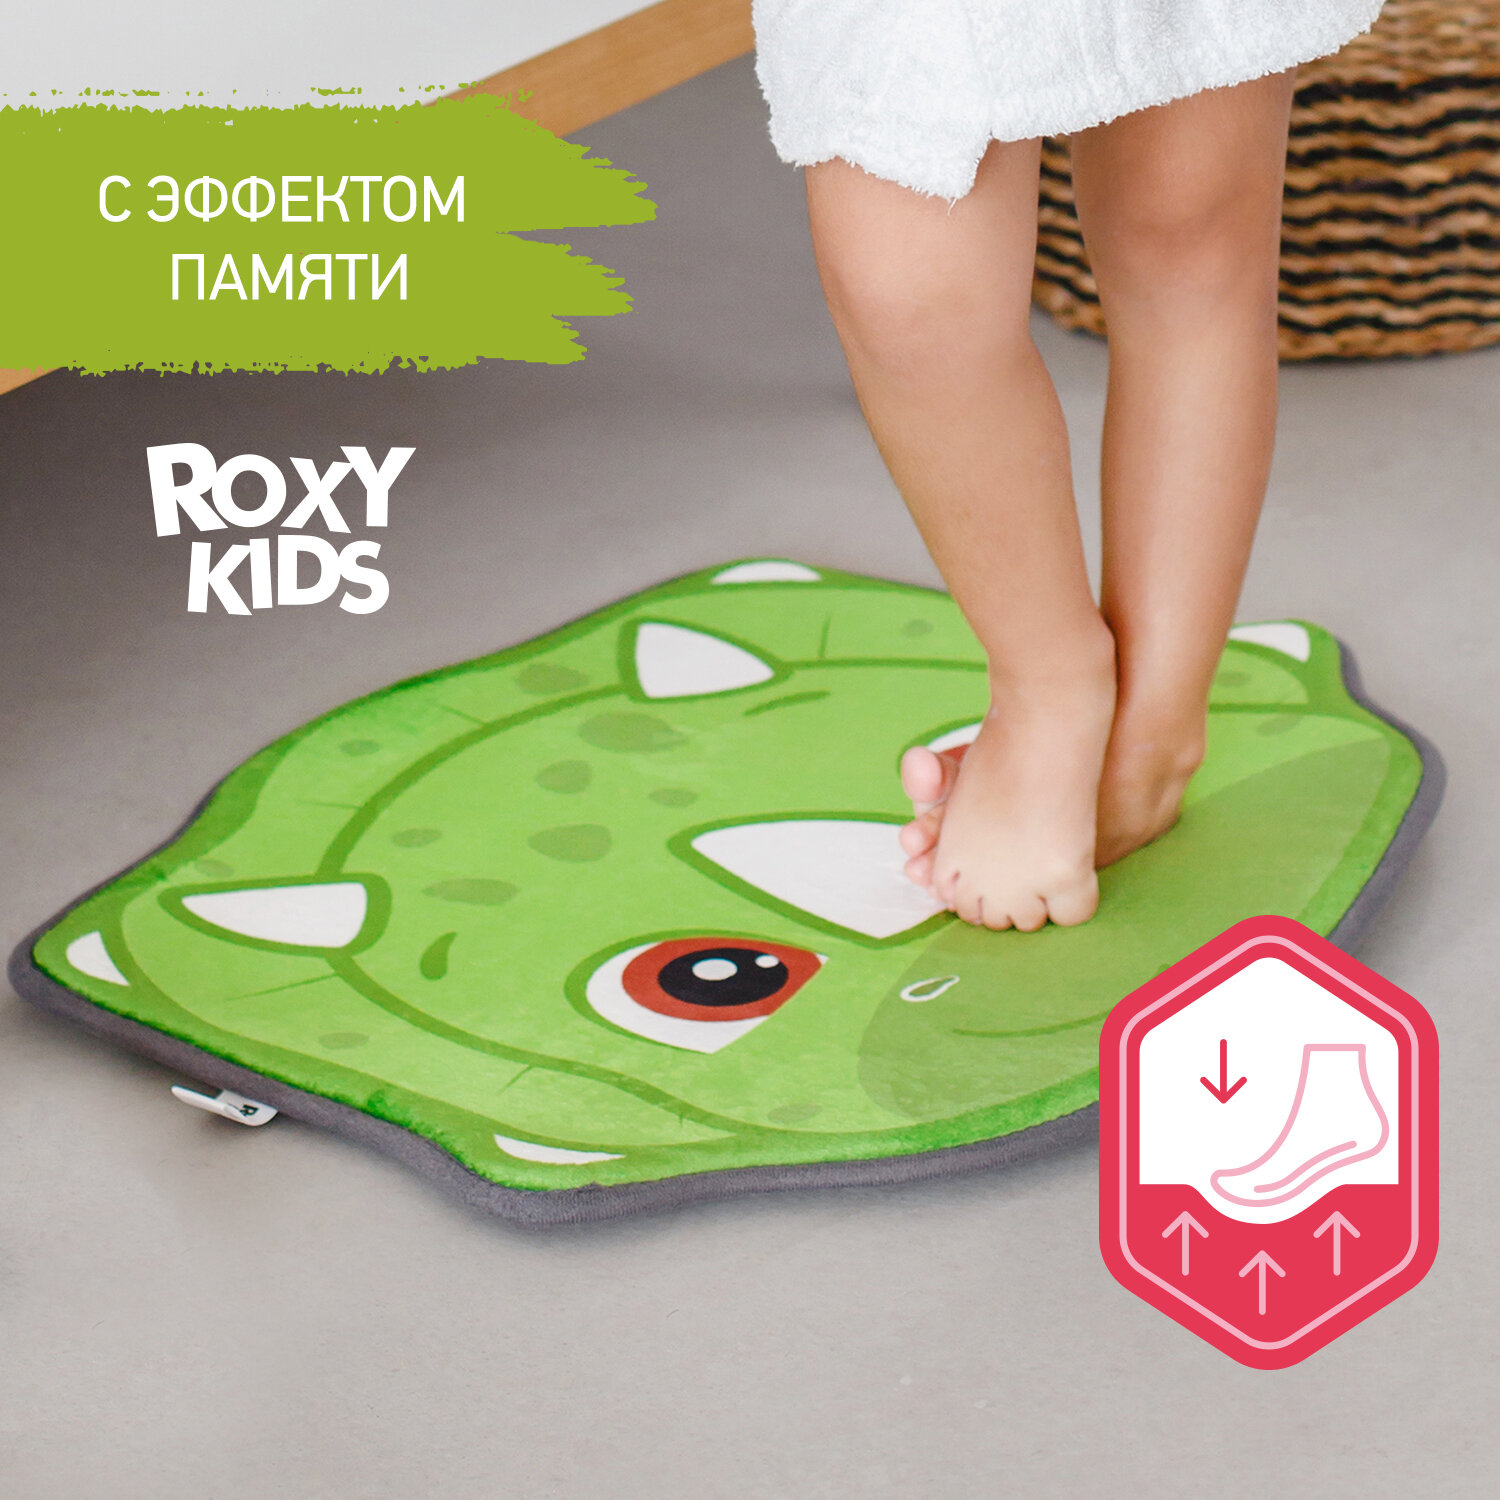 Антискользящий коврик Динозавр для ванной c эффектом памяти плюшевый от ROXY-KIDS, 50x60 см